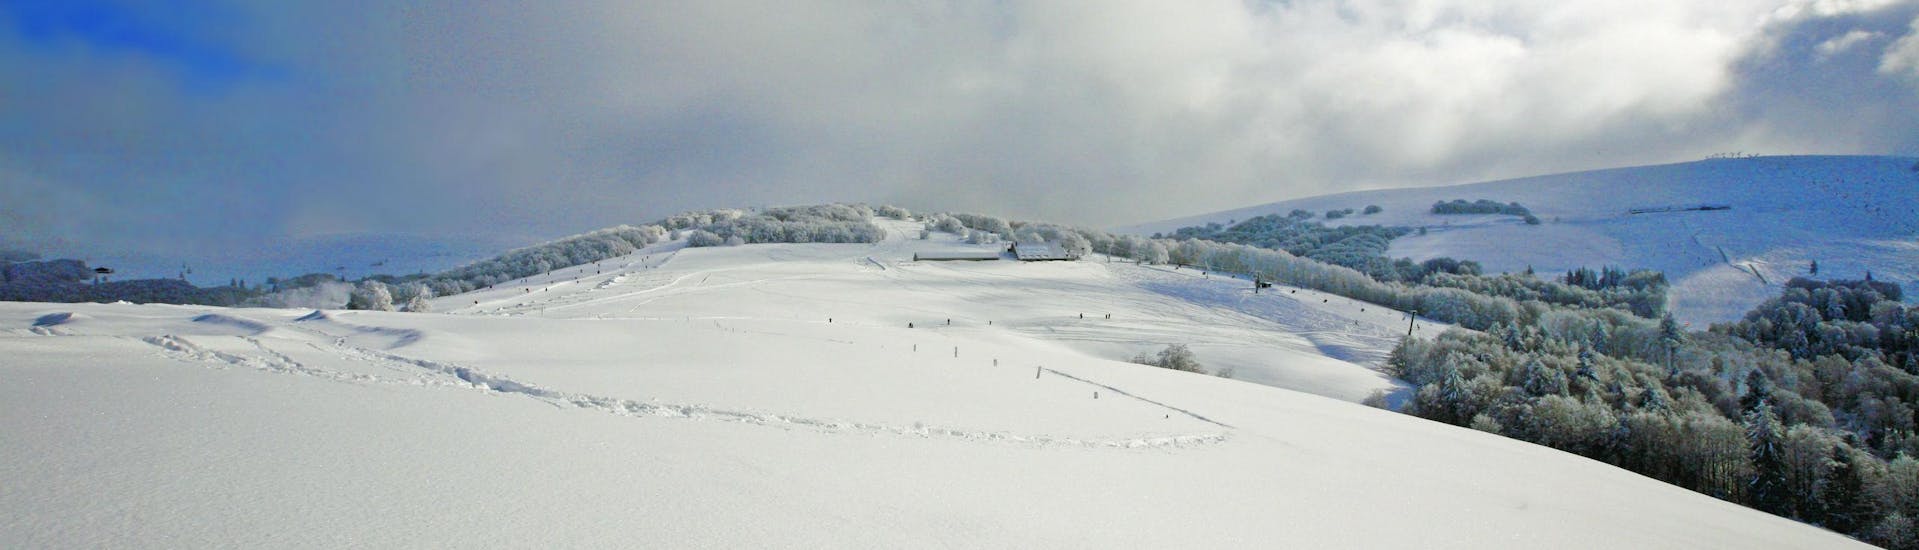 Une image des collines maintenant couvertes de neige de la station de ski de La Bresse, où l'école de ski locale offre une sélection diverse de cours de ski.